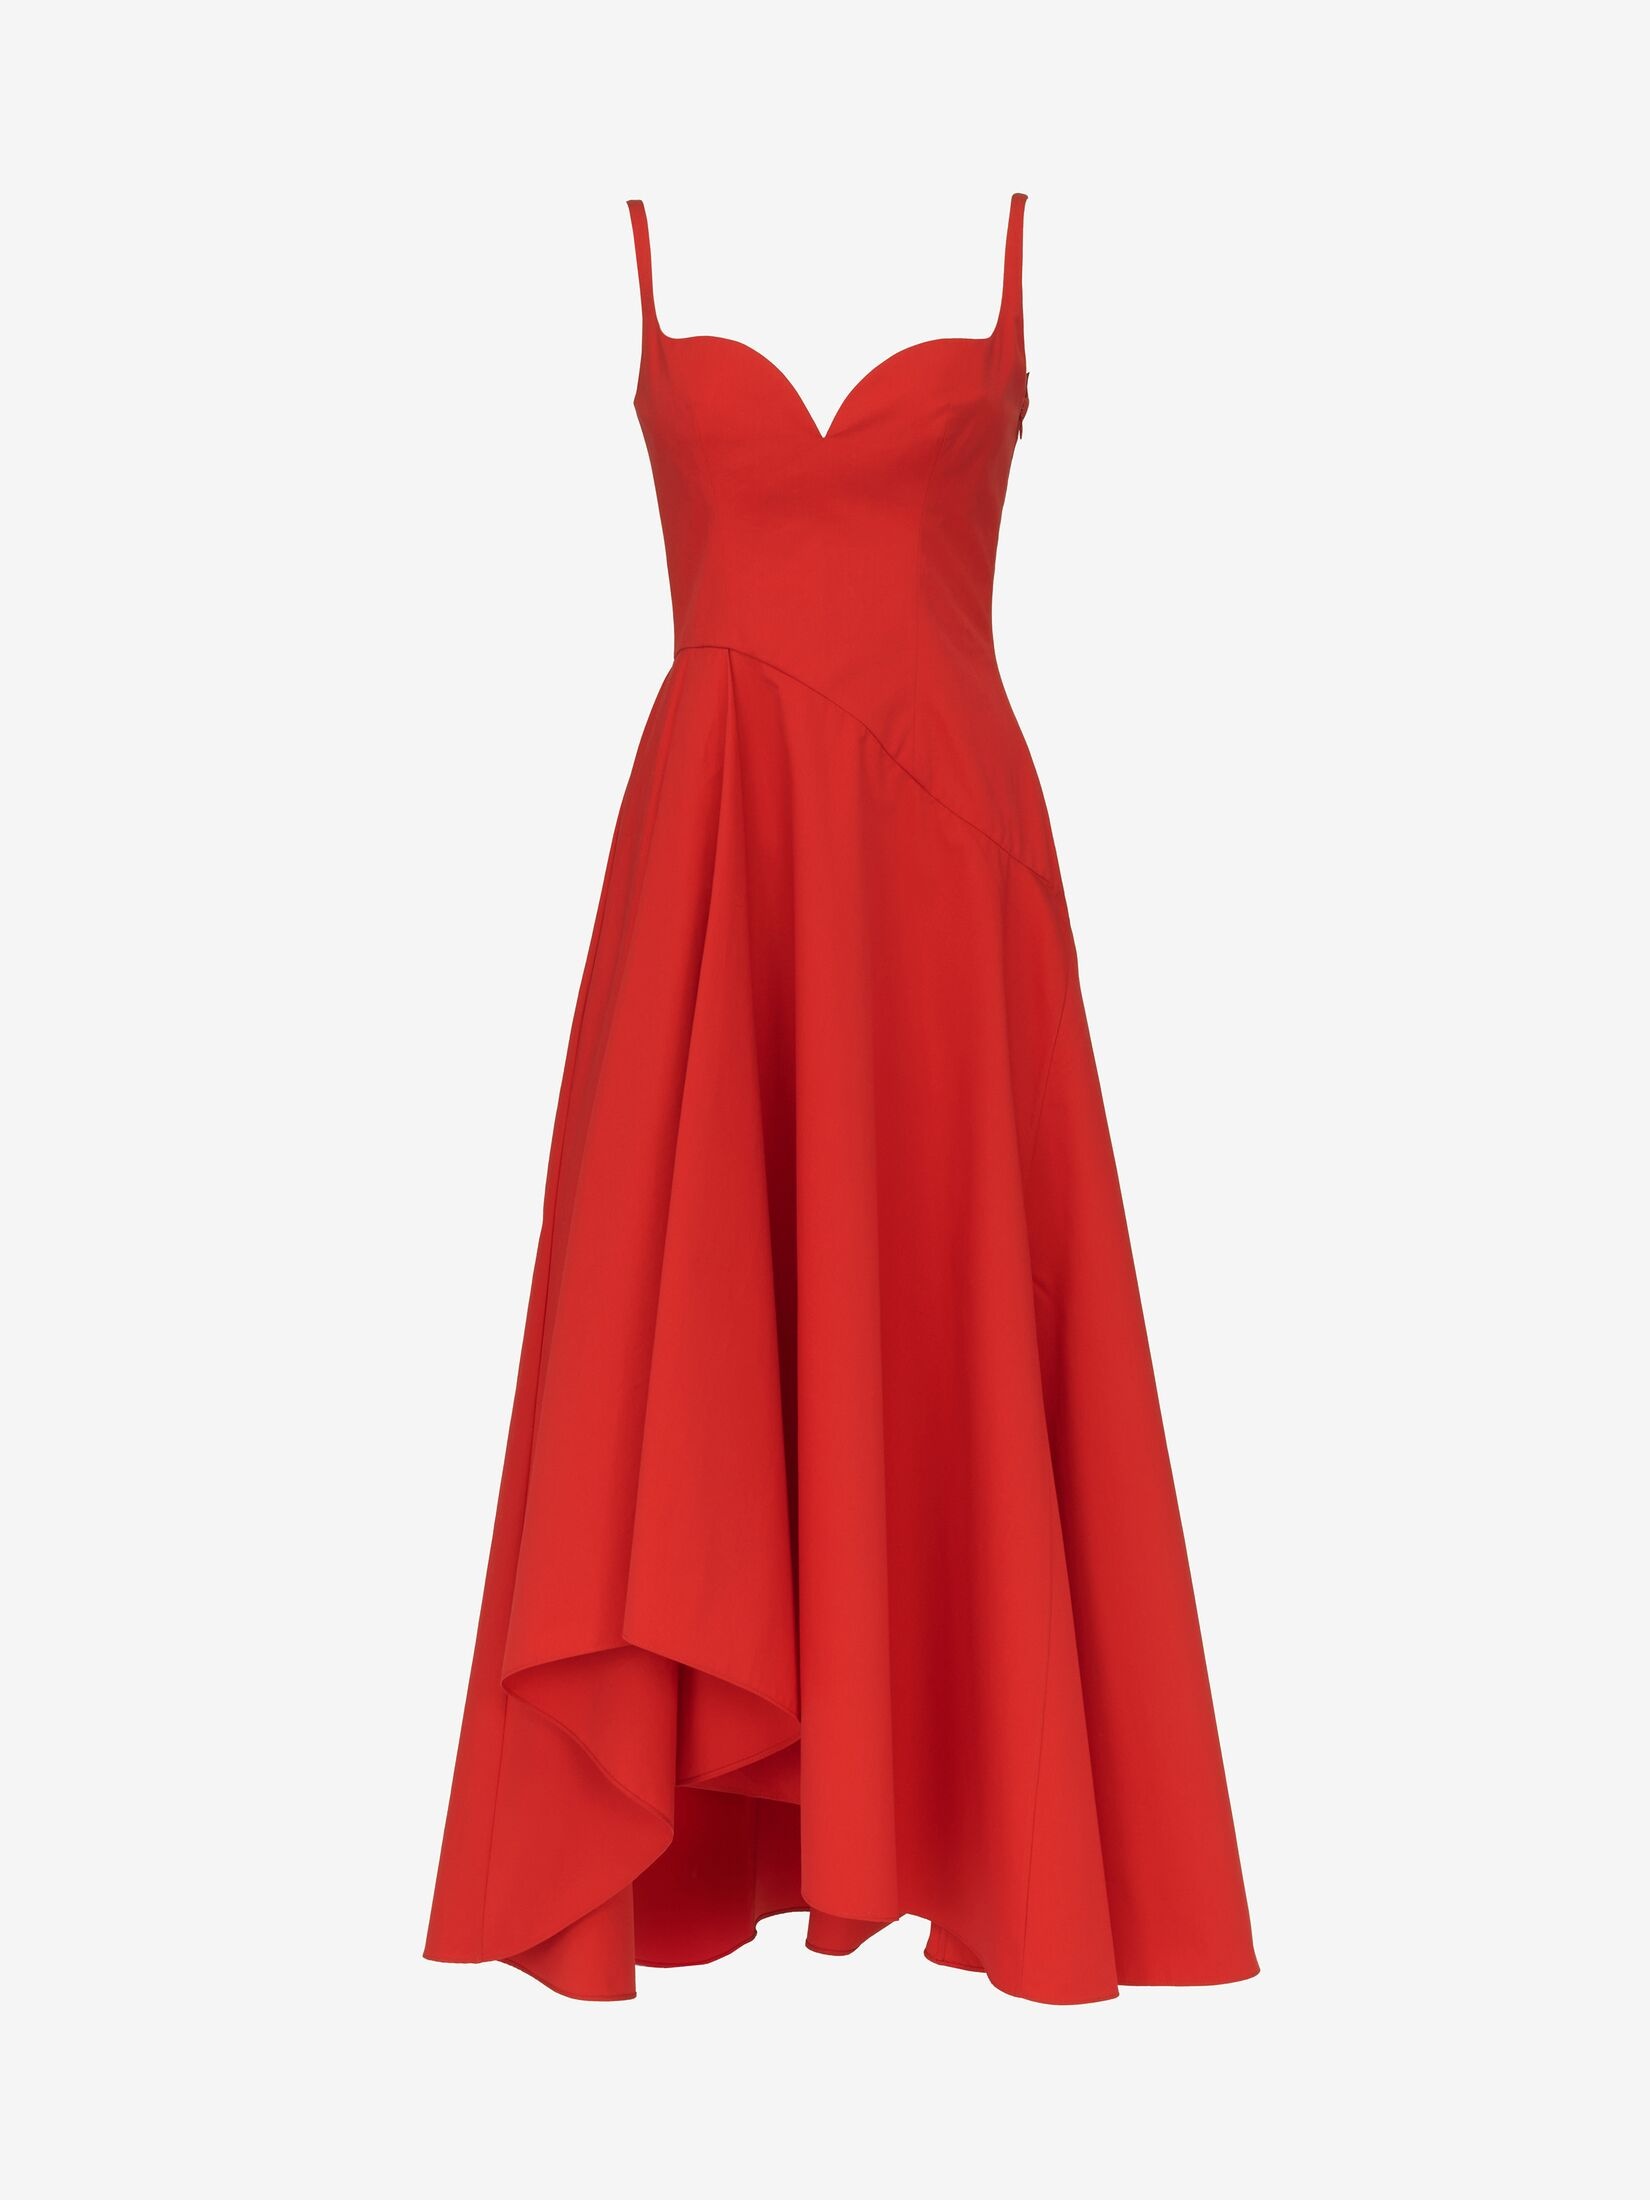 Women's Sweetheart Neckline Midi Dress in Lust Red - 1